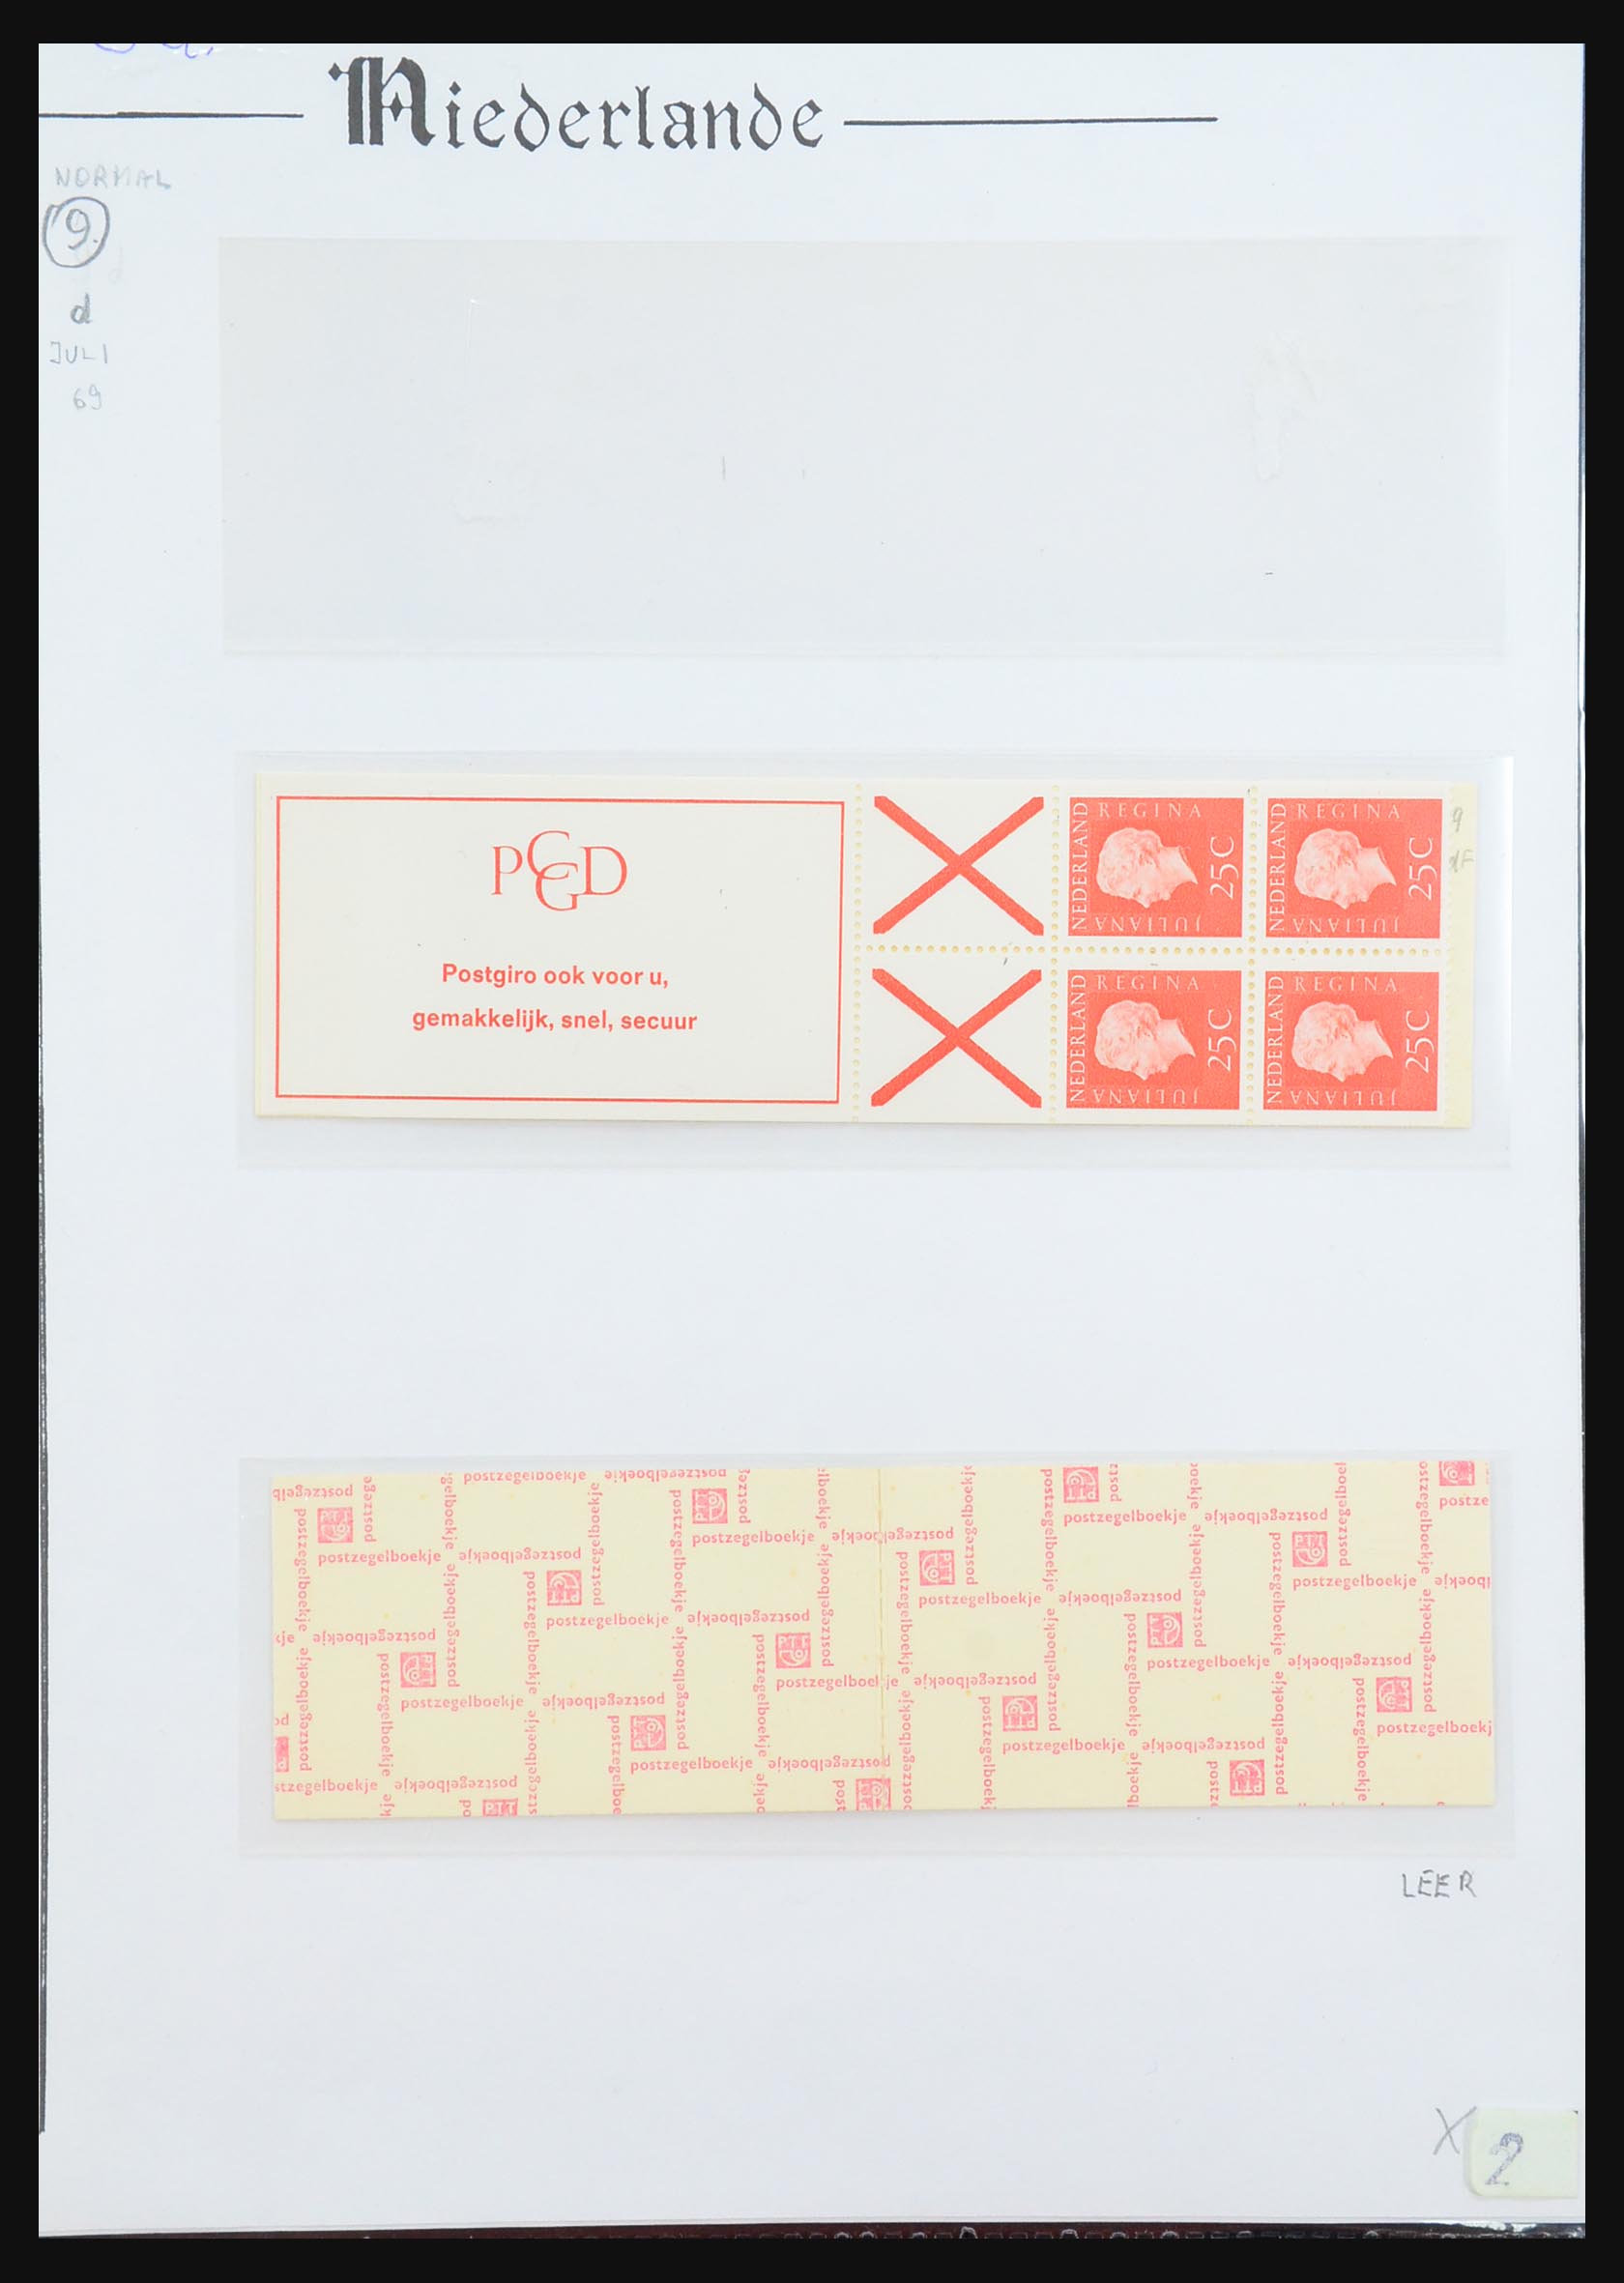 31311 035 - 31311 Netherlands stamp booklets 1964-1994.